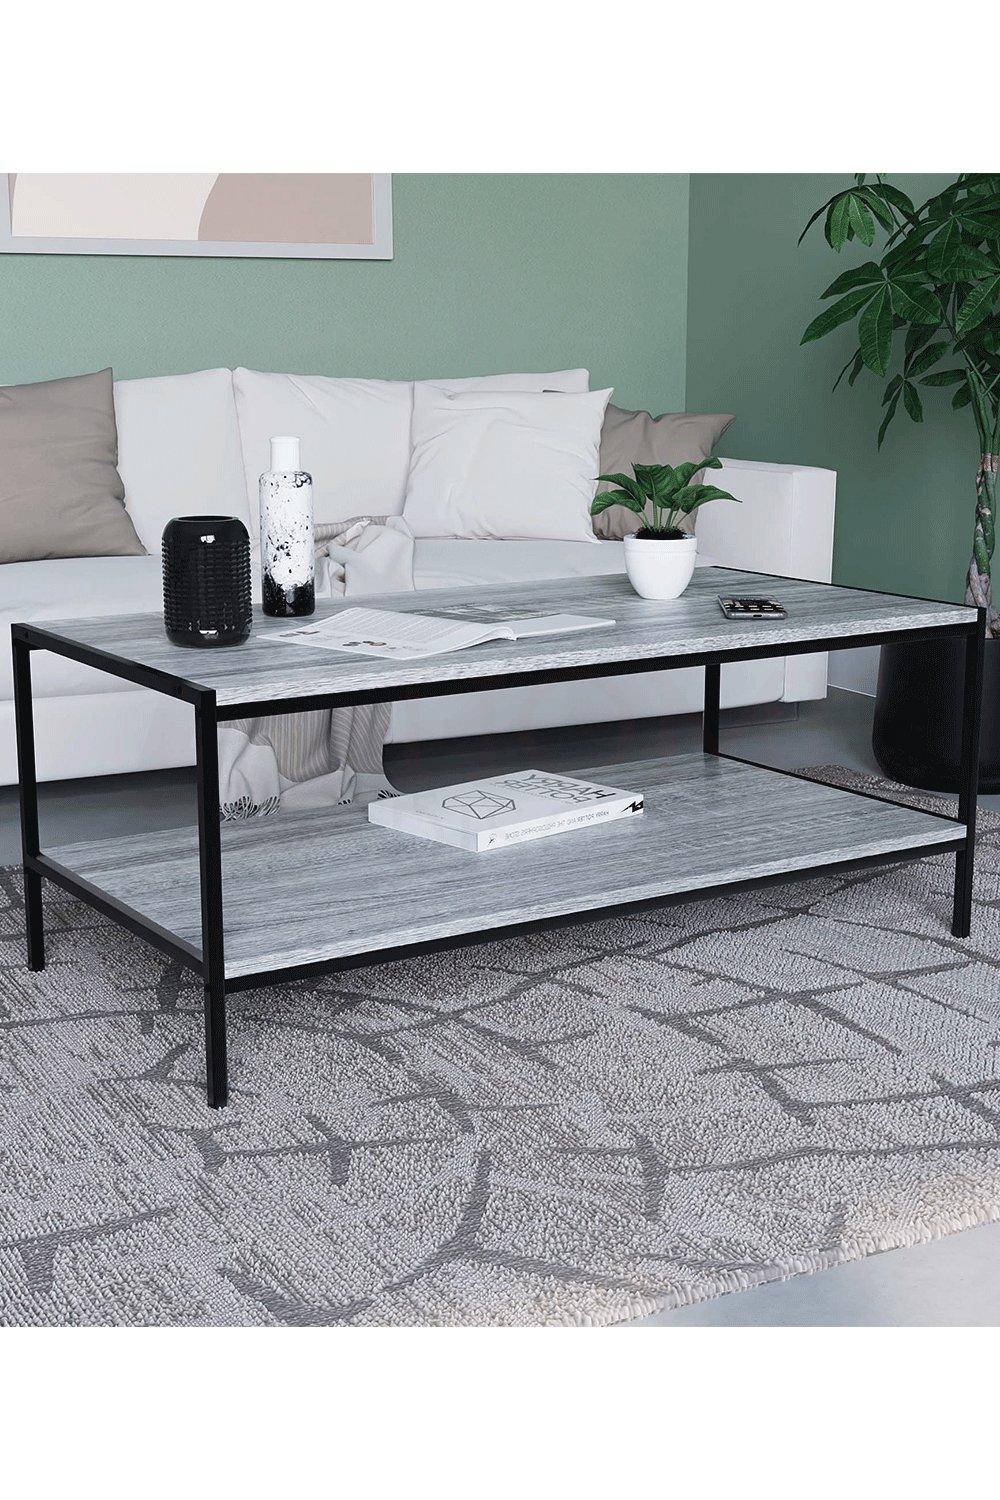 Vida Designs Brooklyn Coffee Table Storage Living Room 400 x 1000 x 500 mm